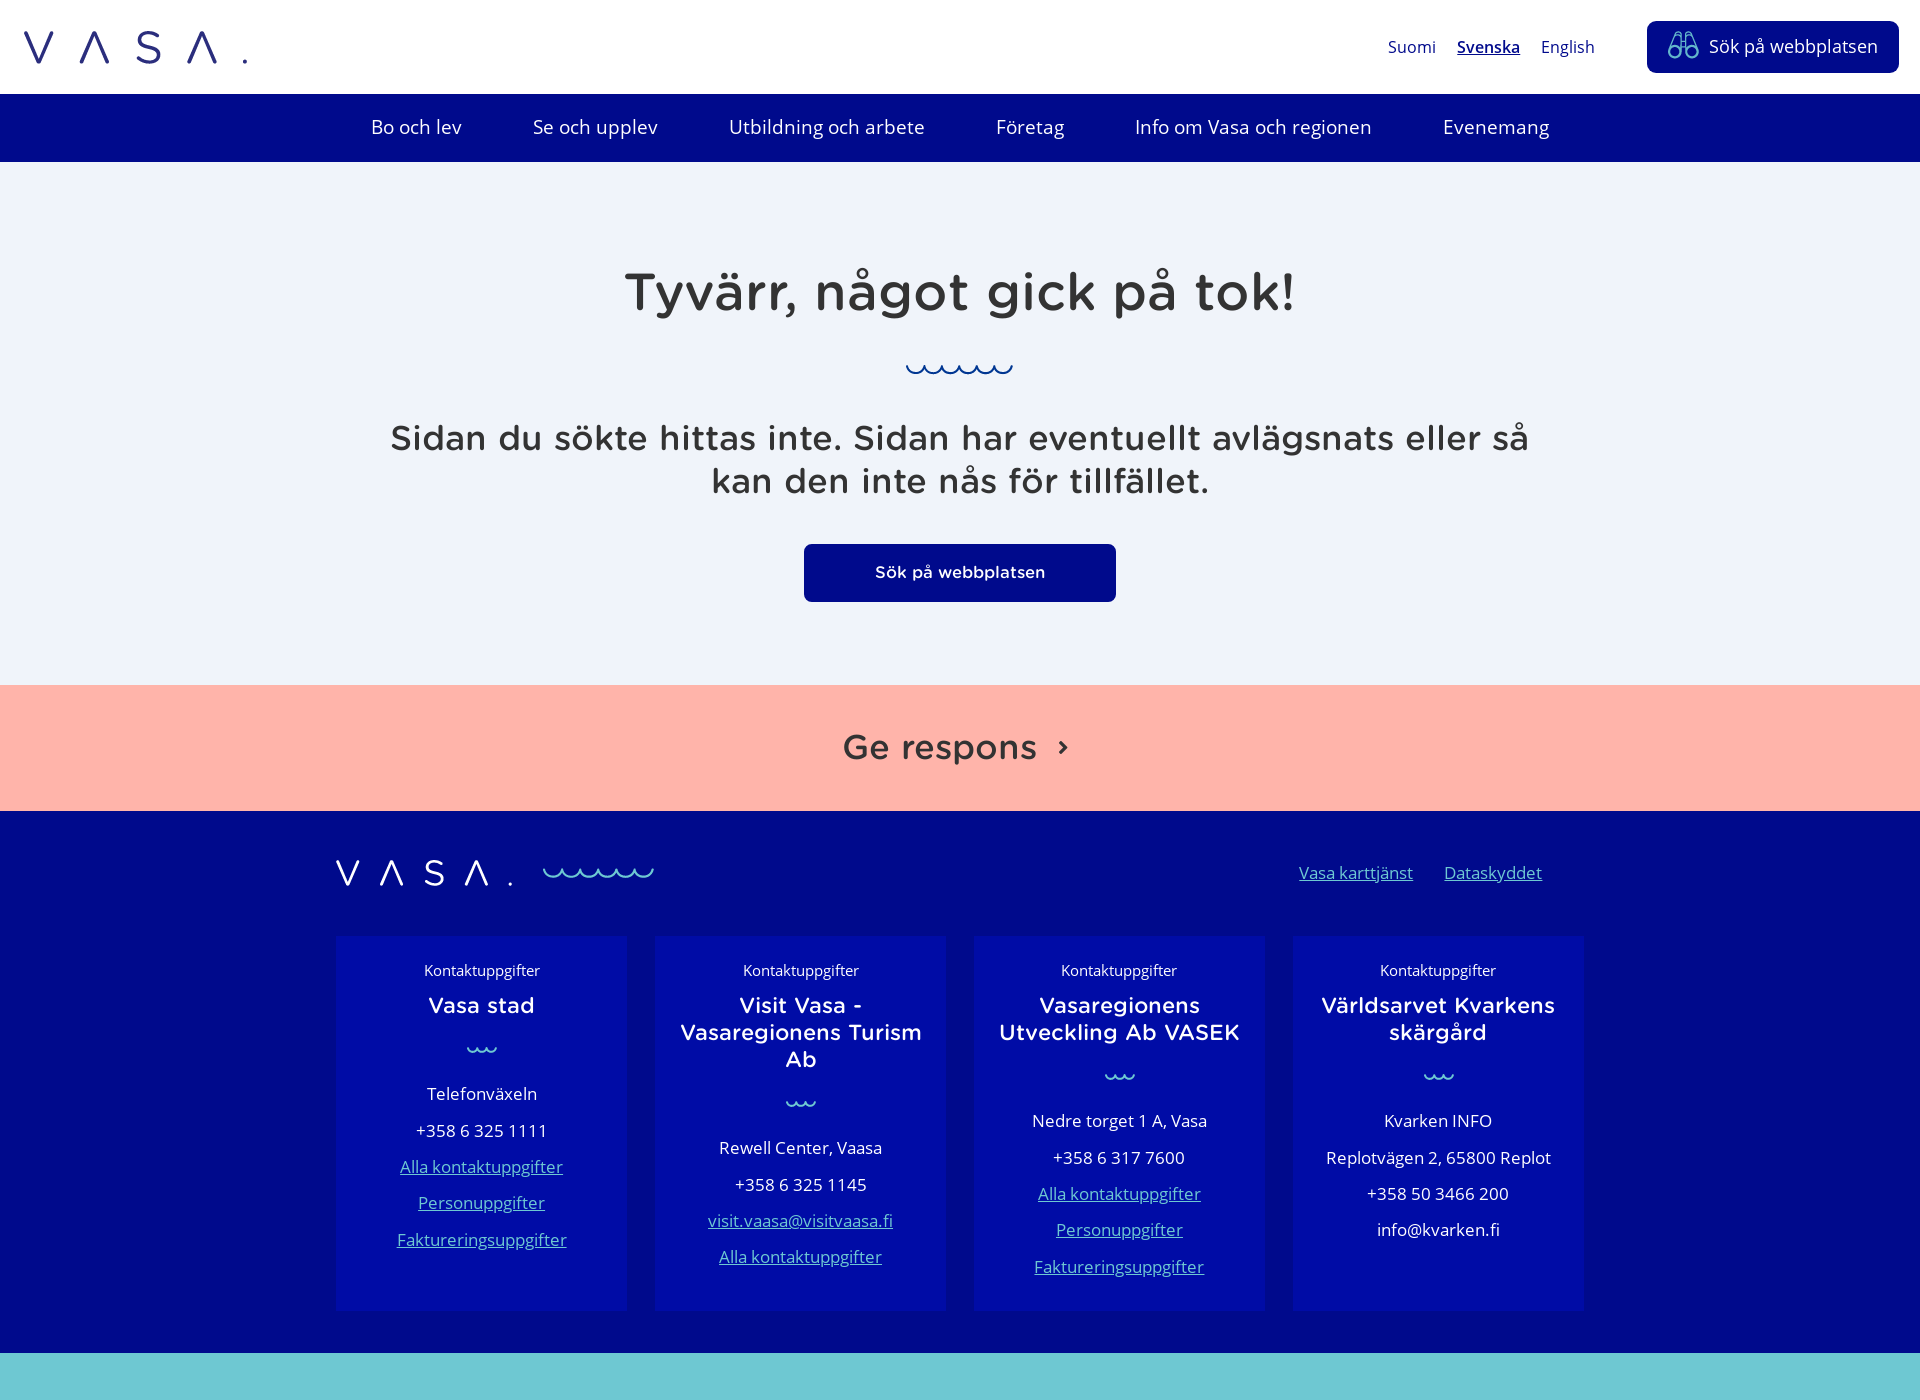 Näyttökuva studeraivasa.fi